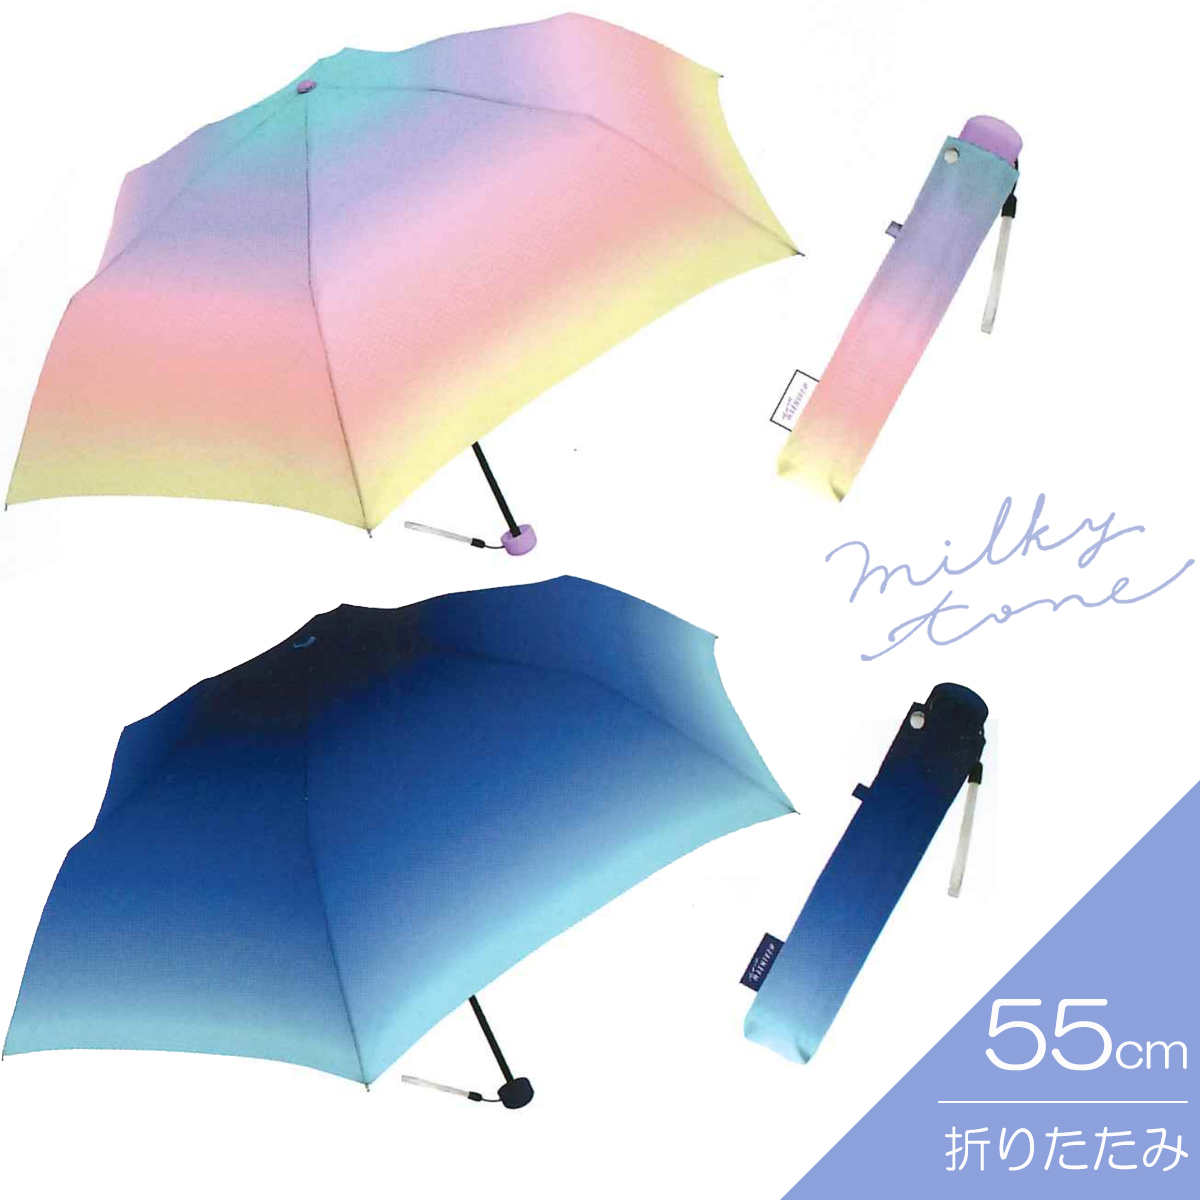 【CRUX】クラックス ミルキートーンアンブレラ 折傘 55cm 折りたたみ傘 婦人傘